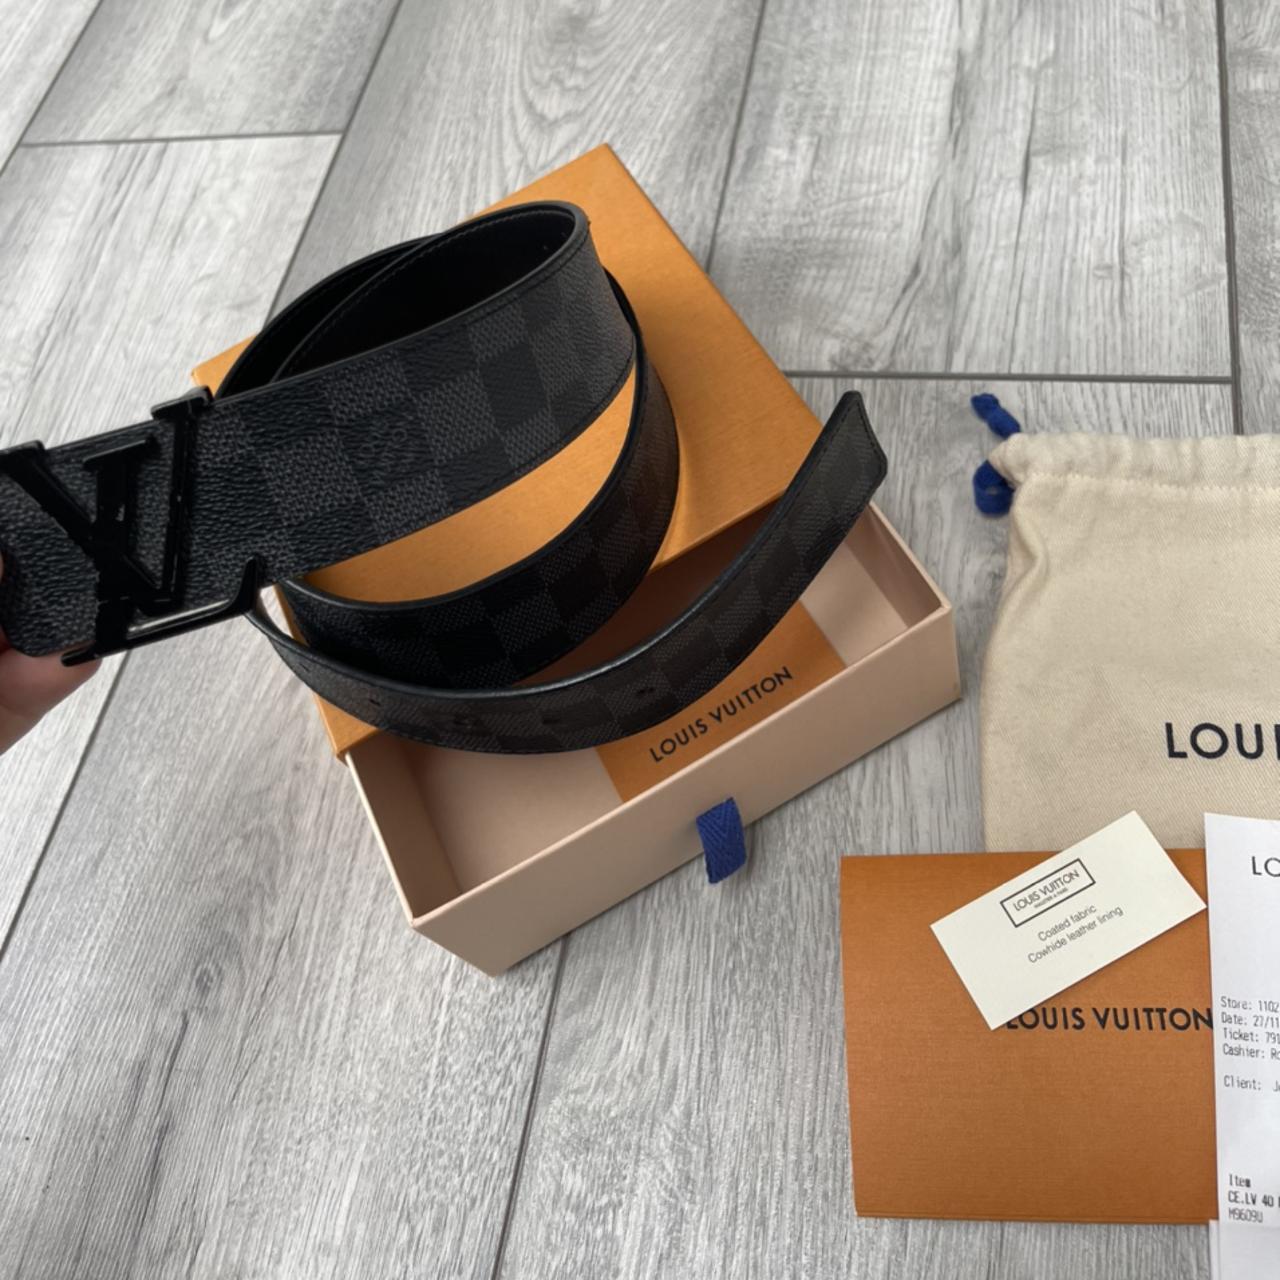 Louis Vuitton belt , More details message me & before